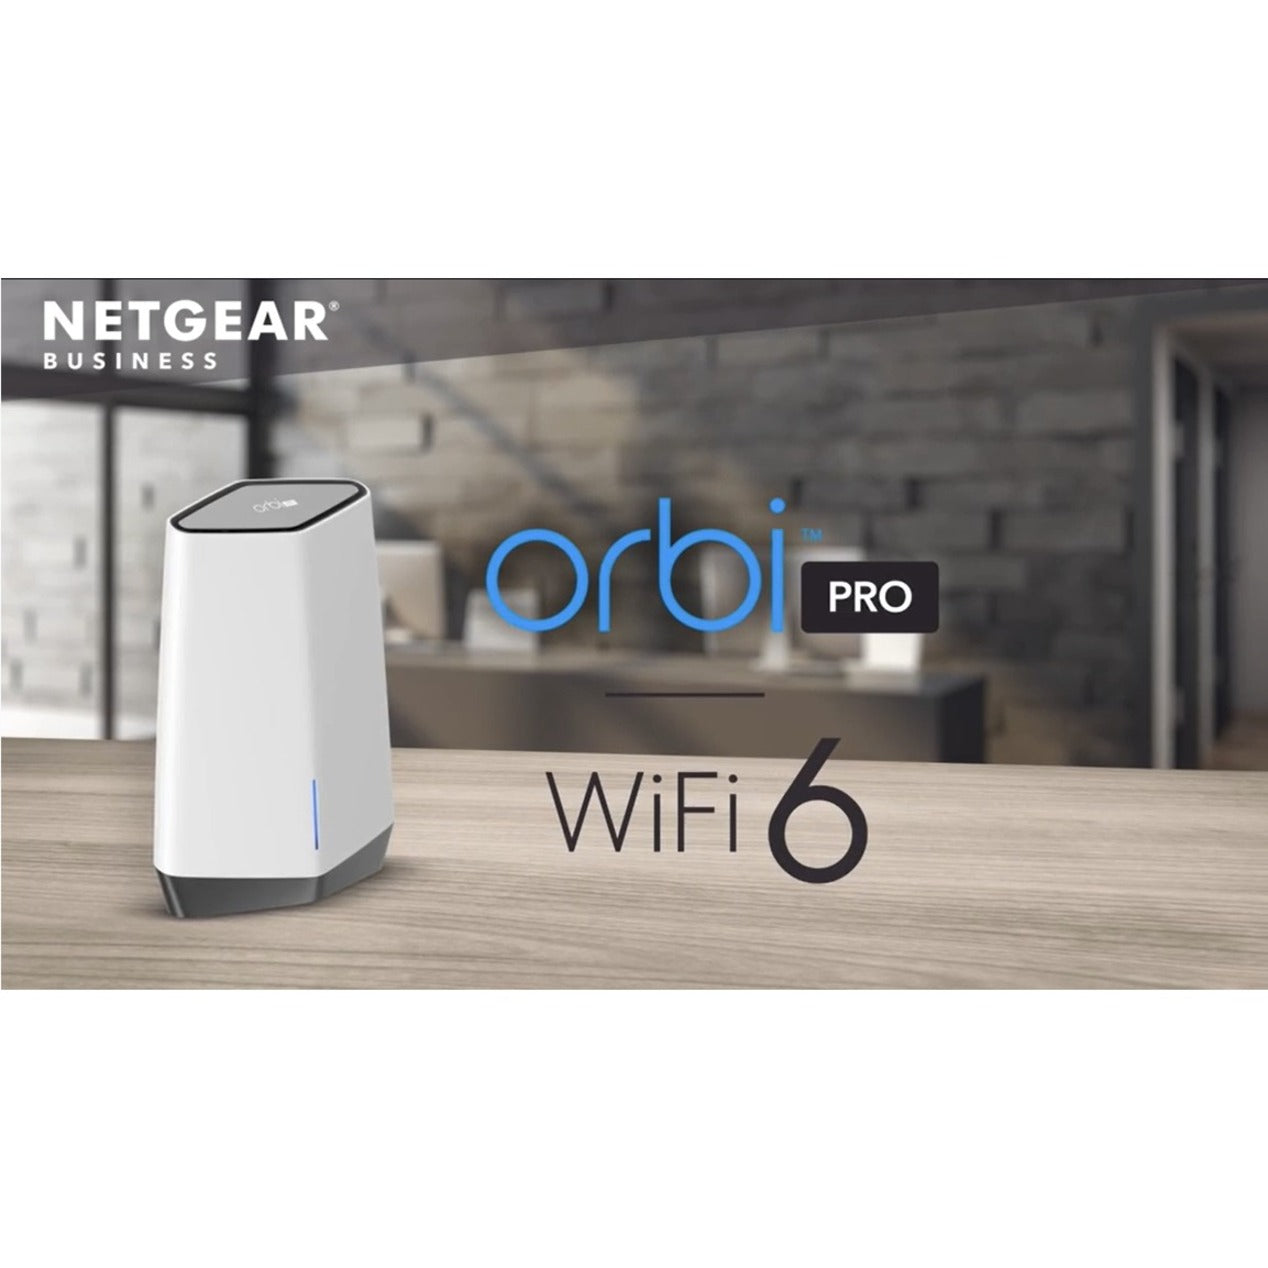 Netgear SXK80-100NAS Orbi Pro WiFi 6 Tri-Band AX6000 WiFi System, 5 Year Warranty, 2.5 Gigabit Ethernet, 750 MB/s Total Wireless Transmission Speed